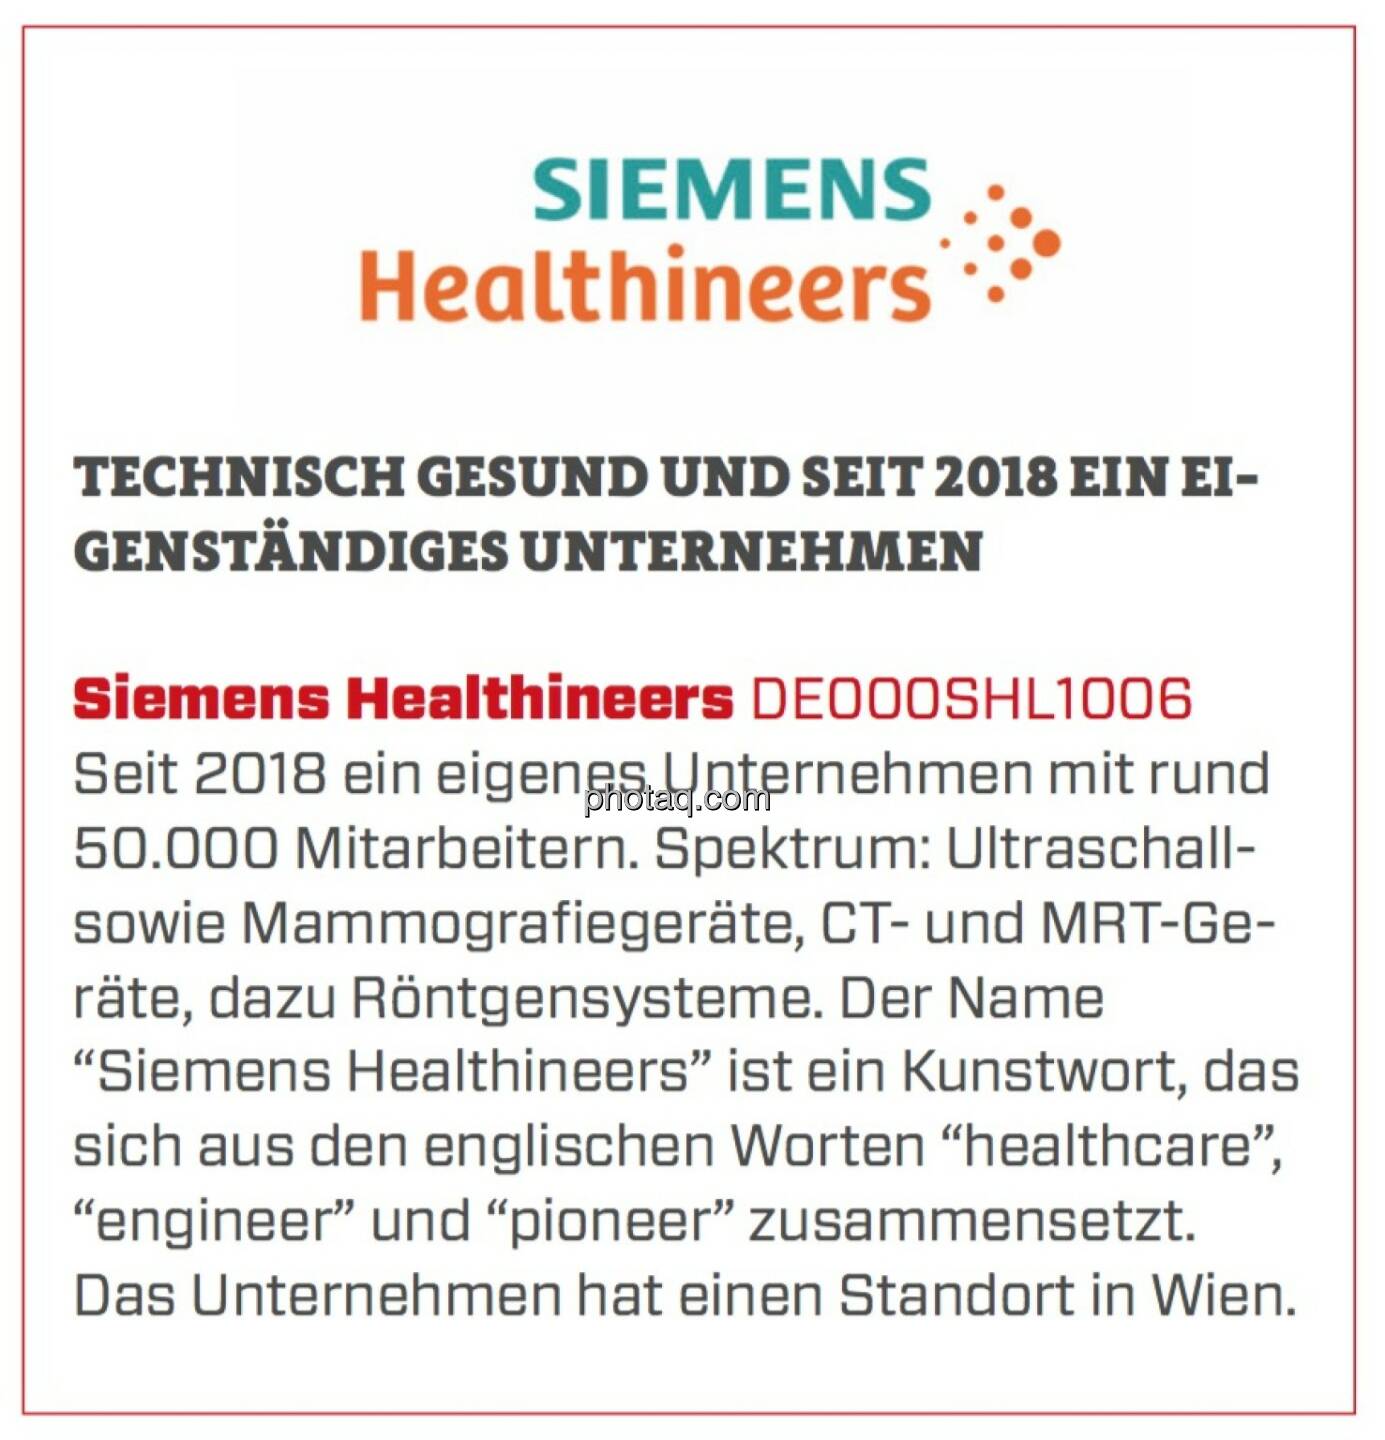 Siemens Healthineers - Technisch gesund und seit 2018 ein eigenständiges Unternehmen: Seit 2018 ein eigenes Unternehmen mit rund 50.000 Mitarbeitern. Spektrum: Ultraschall- sowie Mammografiegeräte, CT- und MRT-Geräte, dazu Röntgensysteme. Der Name “Siemens Healthineers” ist ein Kunstwort, das sich aus den englischen Worten “healthcare”, “engineer” und “pioneer” zusammensetzt. Das Unternehmen hat einen Standort in Wien.